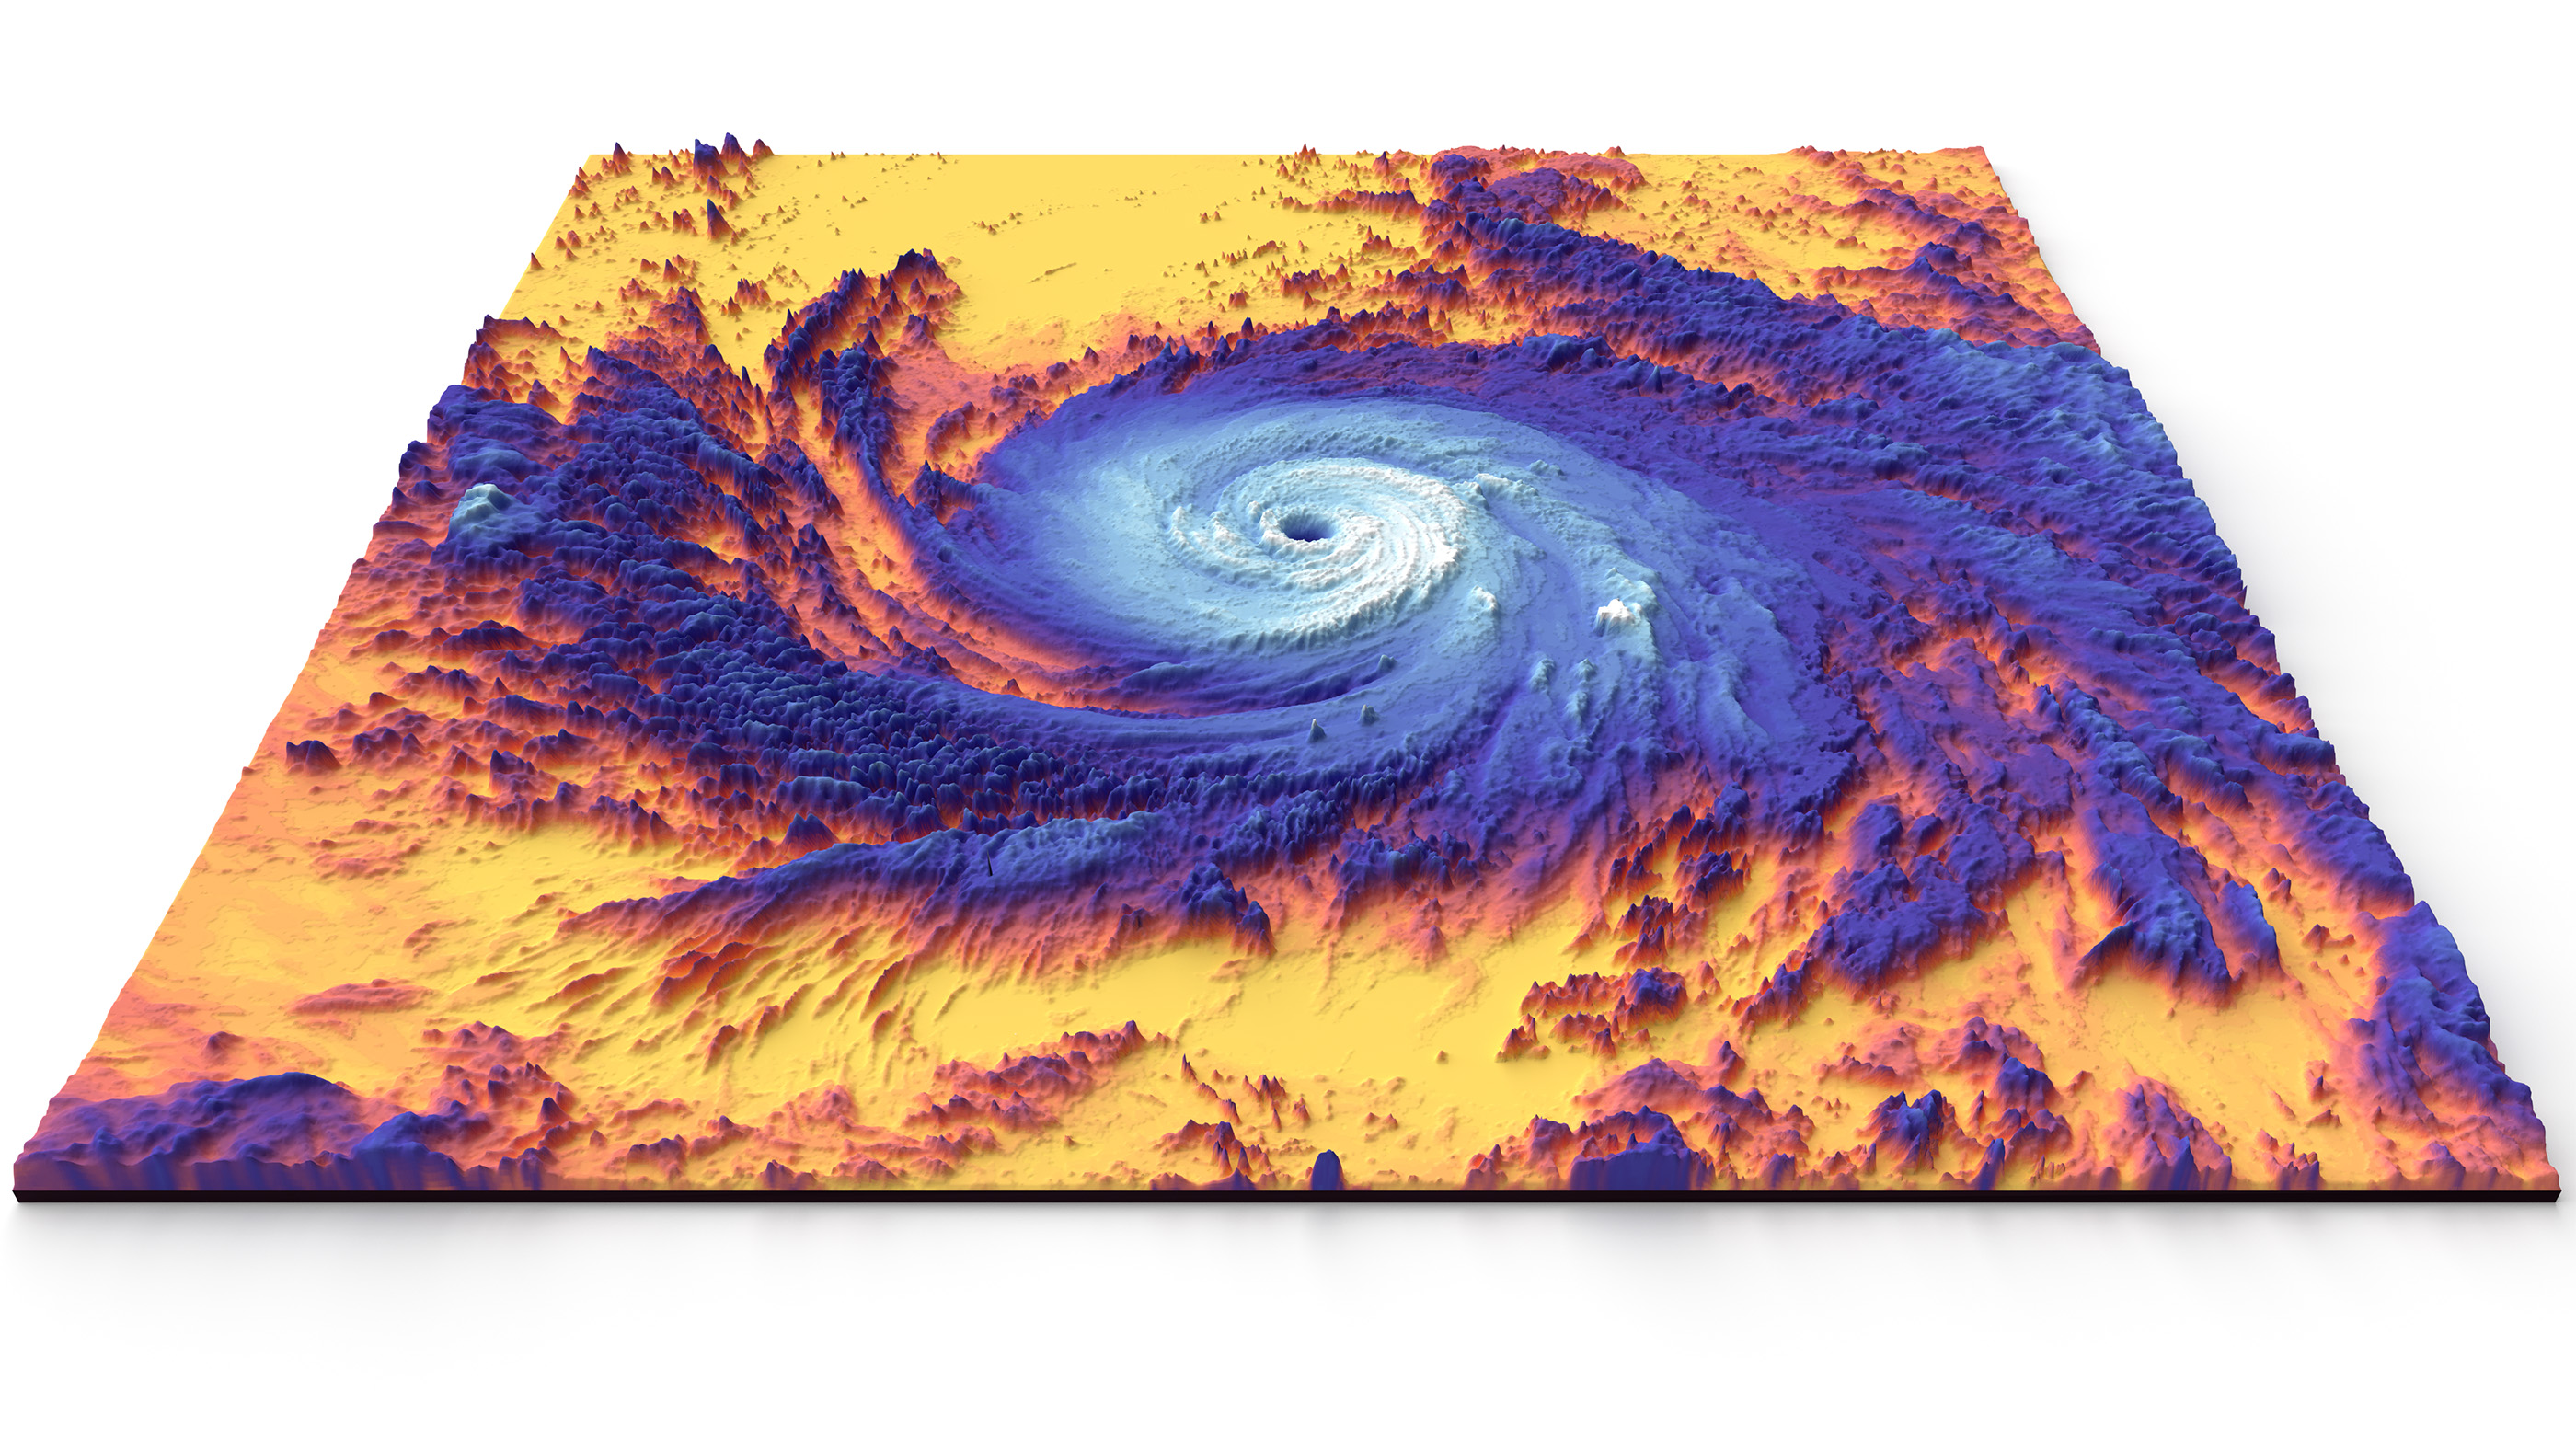 Сателитът Terra на НАСА засне това топлинно (топлинно) изображение на урагана Мария от категория 5 през 2017 г. Жълто и оранжево са топлите океански води, а синьо и бяло са високите, хладни върхове на облаците на урагана.